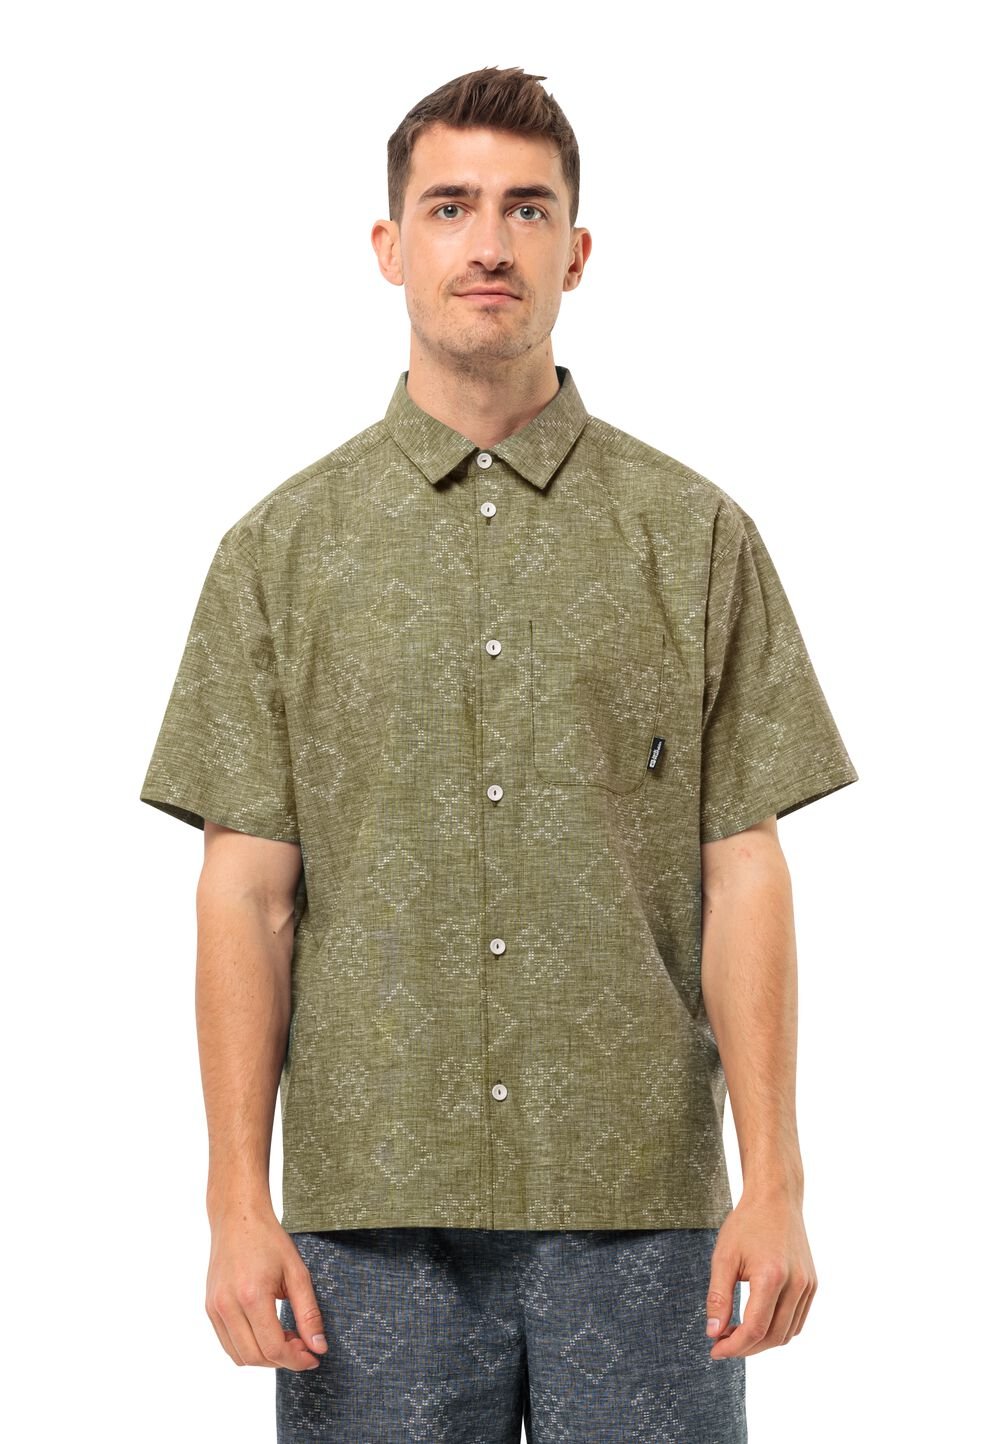 Jack Wolfskin Kurzarm Hemd Herren Karana Shirt Men 3XL braun bay leaf von Jack Wolfskin